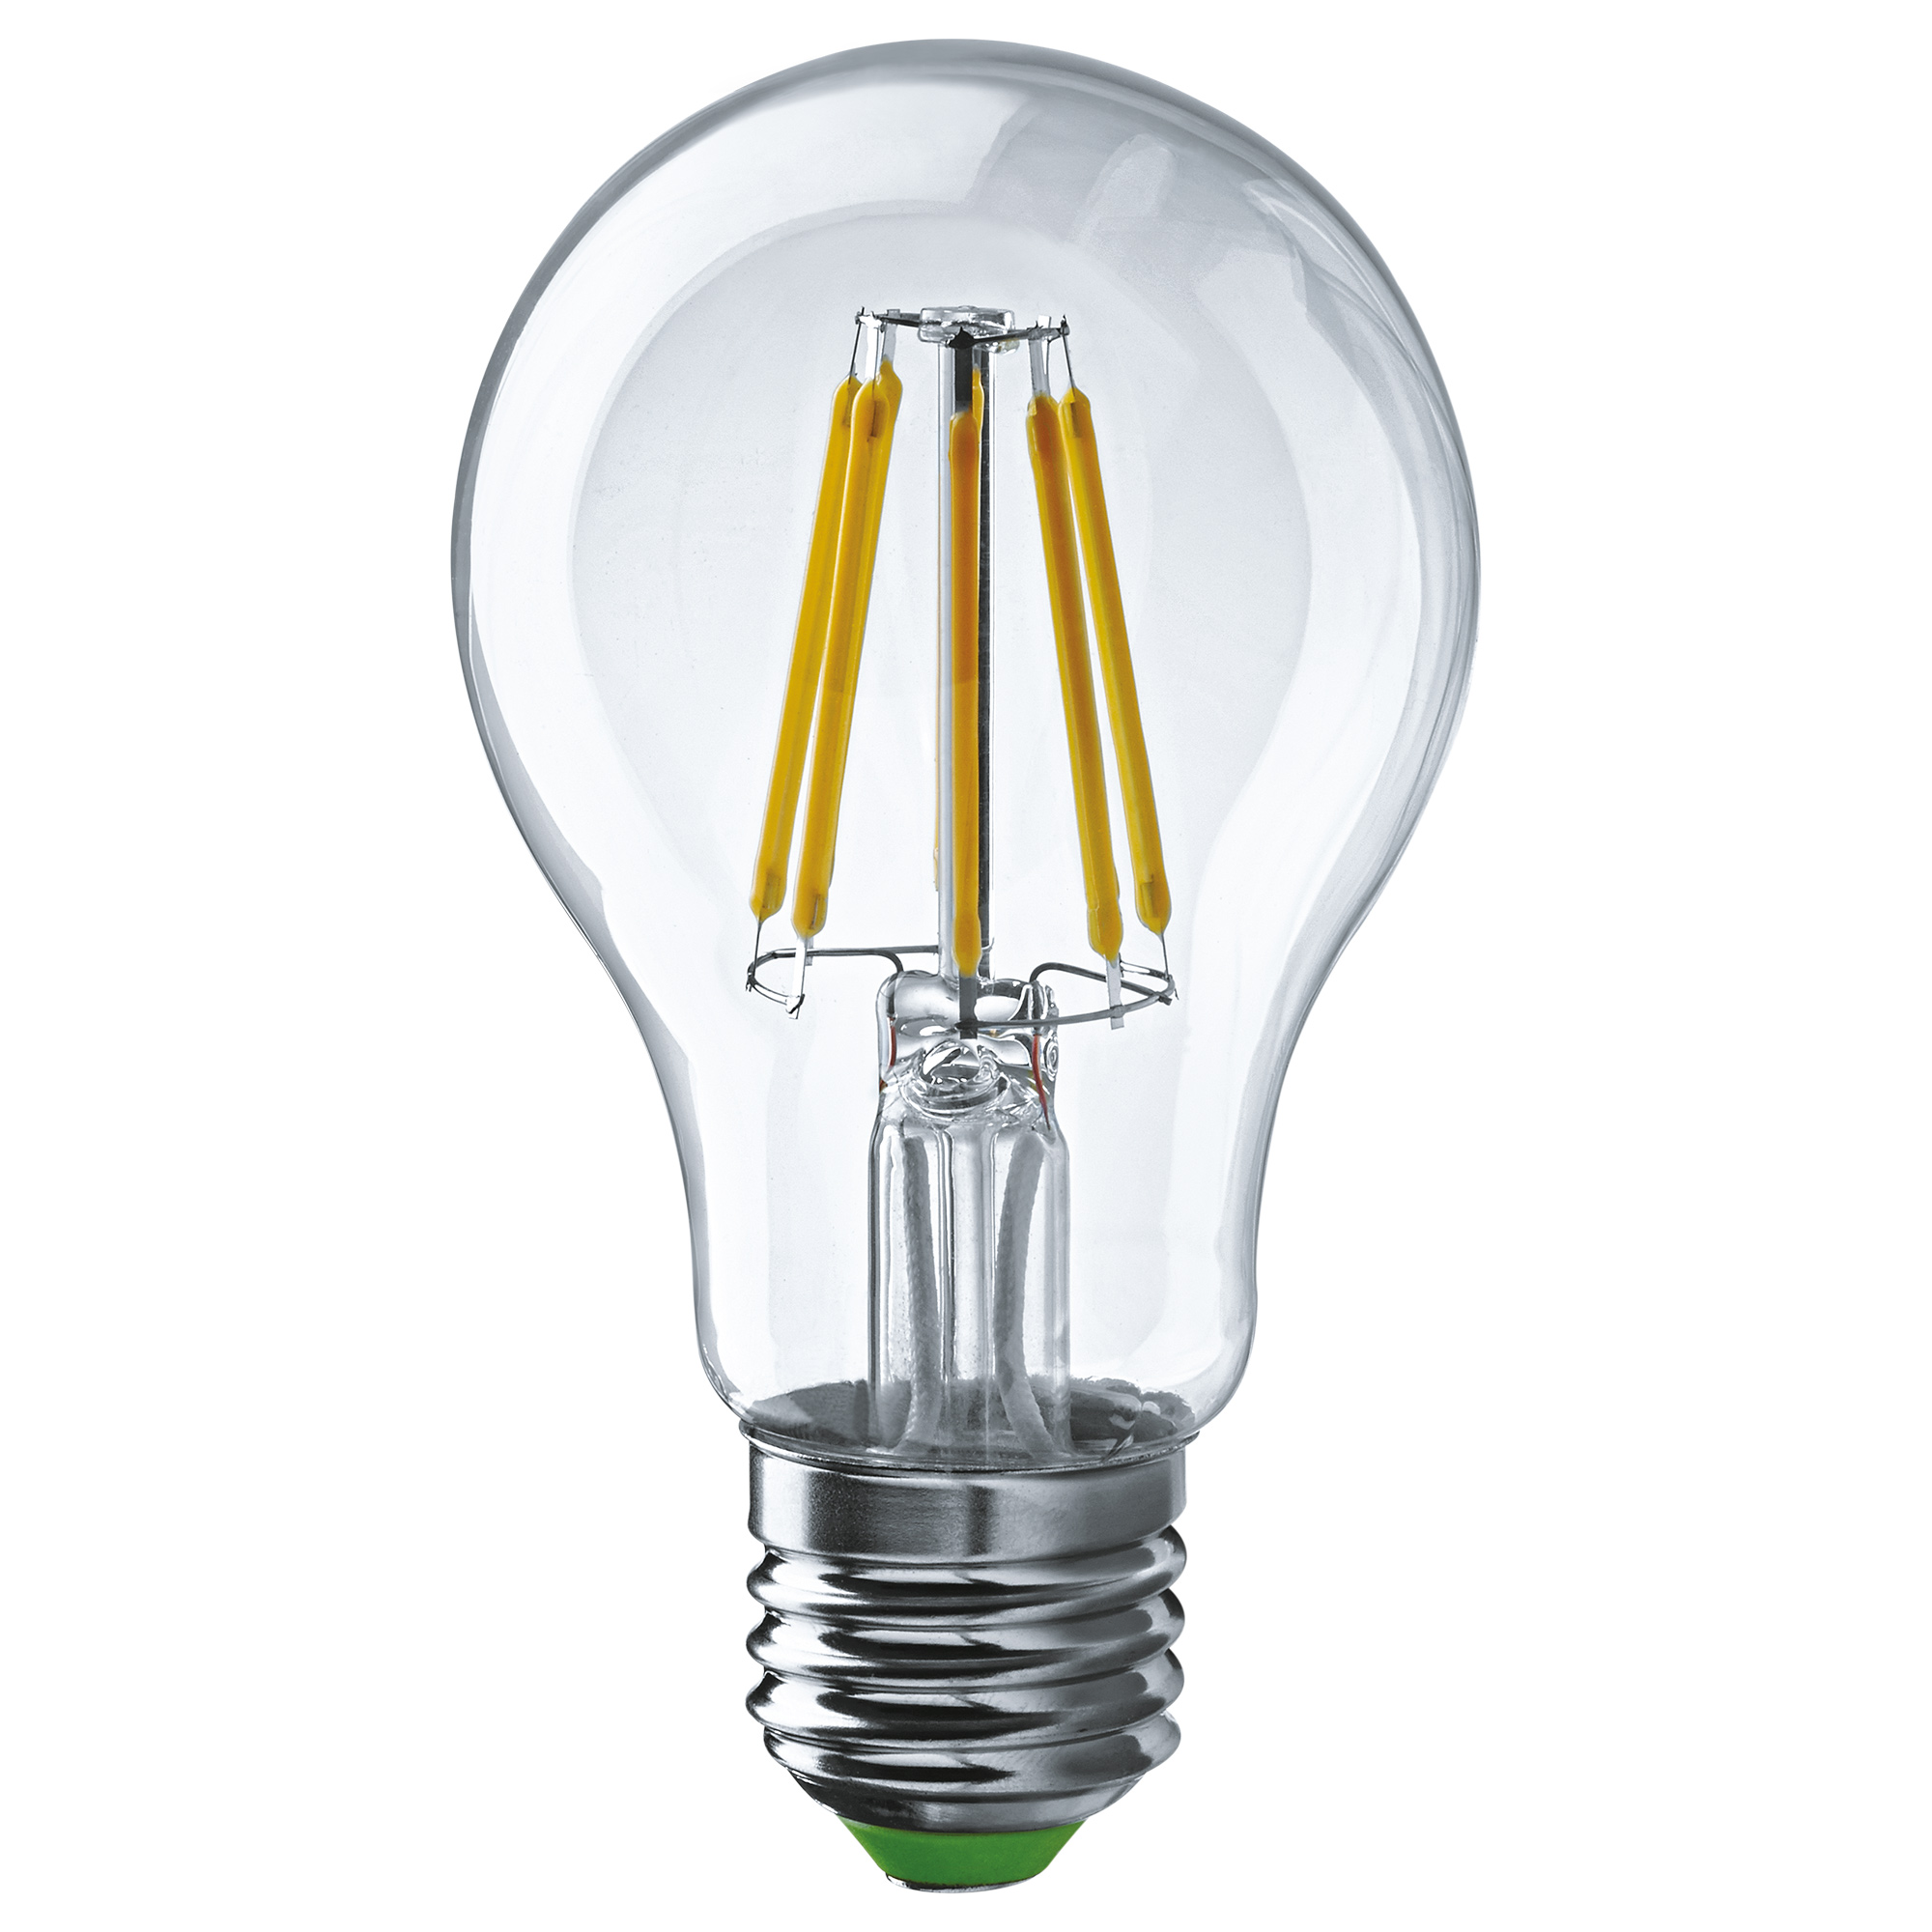 Лампа светодиодная Navigator груша прозрачная 8Вт цоколь E27 (теплый свет) лампа filament груша 8вт e27 холодная navigator 61345